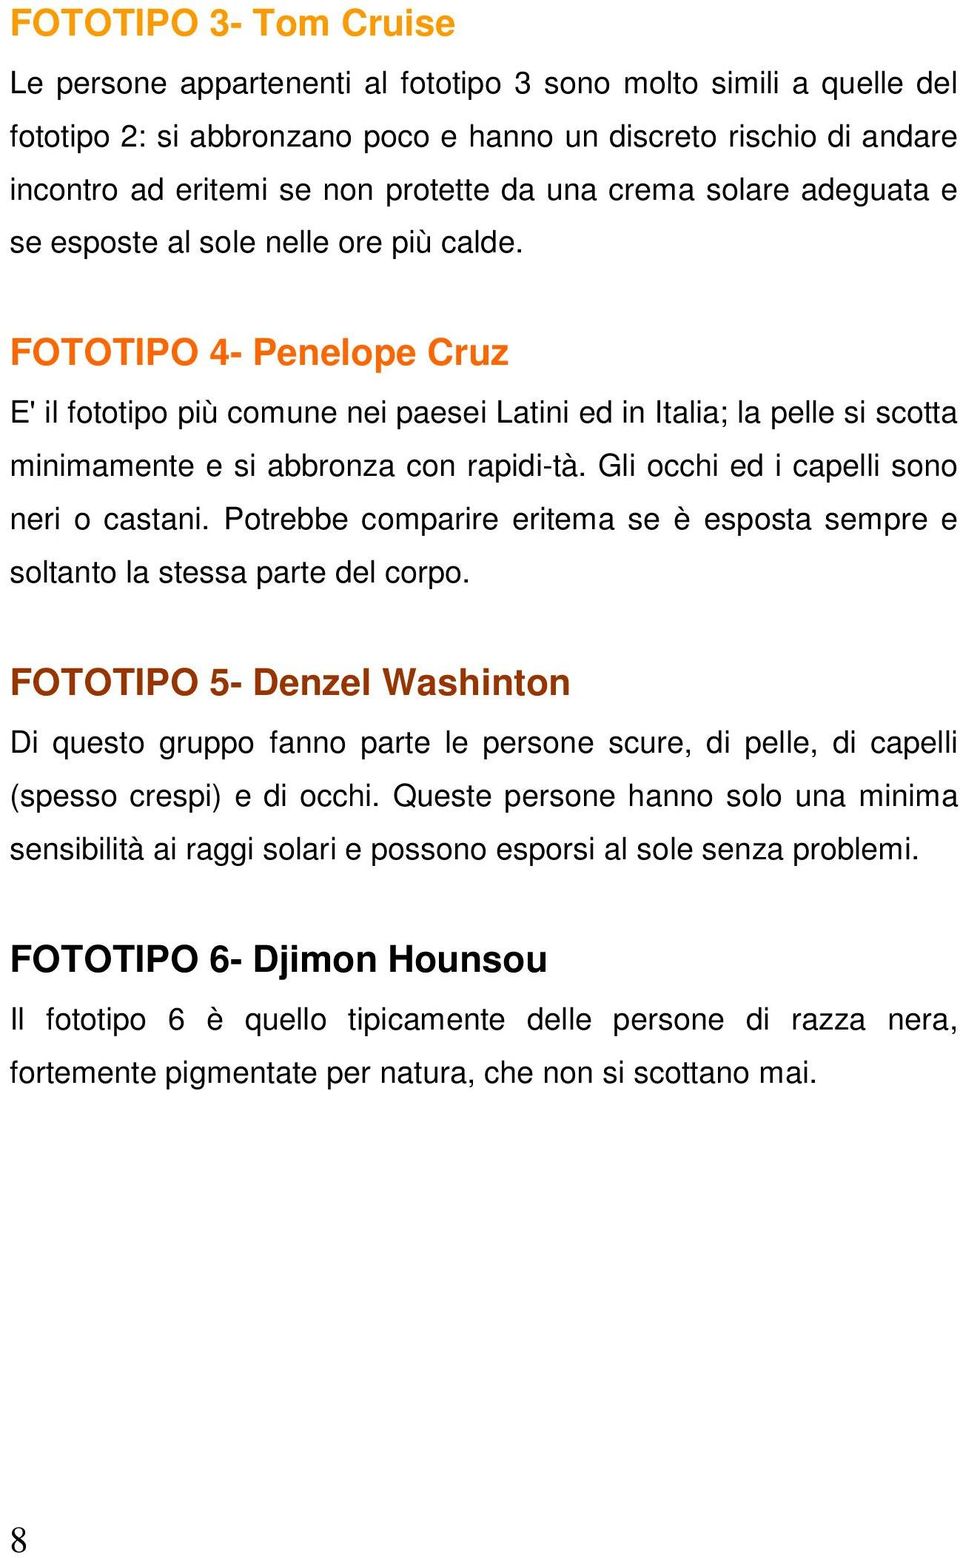 FOTOTIPO 4- Penelope Cruz E' il fototipo più comune nei paesei Latini ed in Italia; la pelle si scotta minimamente e si abbronza con rapidi-tà. Gli occhi ed i capelli sono neri o castani.